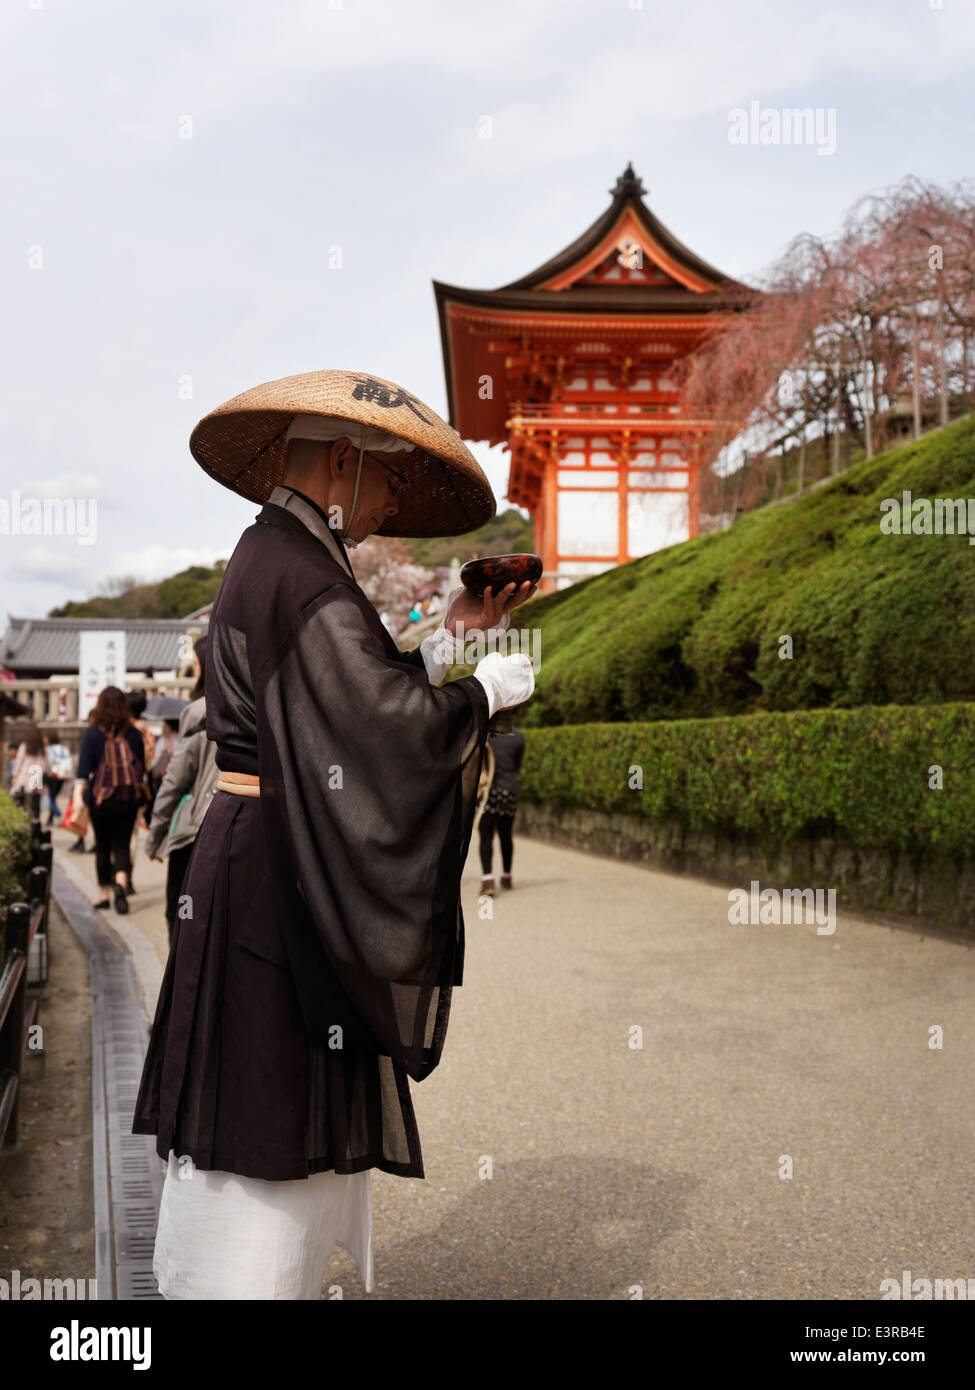 Moine mendiant demandant des dons. Temple Kiyomizu-dera, temple bouddhiste de Kyoto, au Japon. Banque D'Images